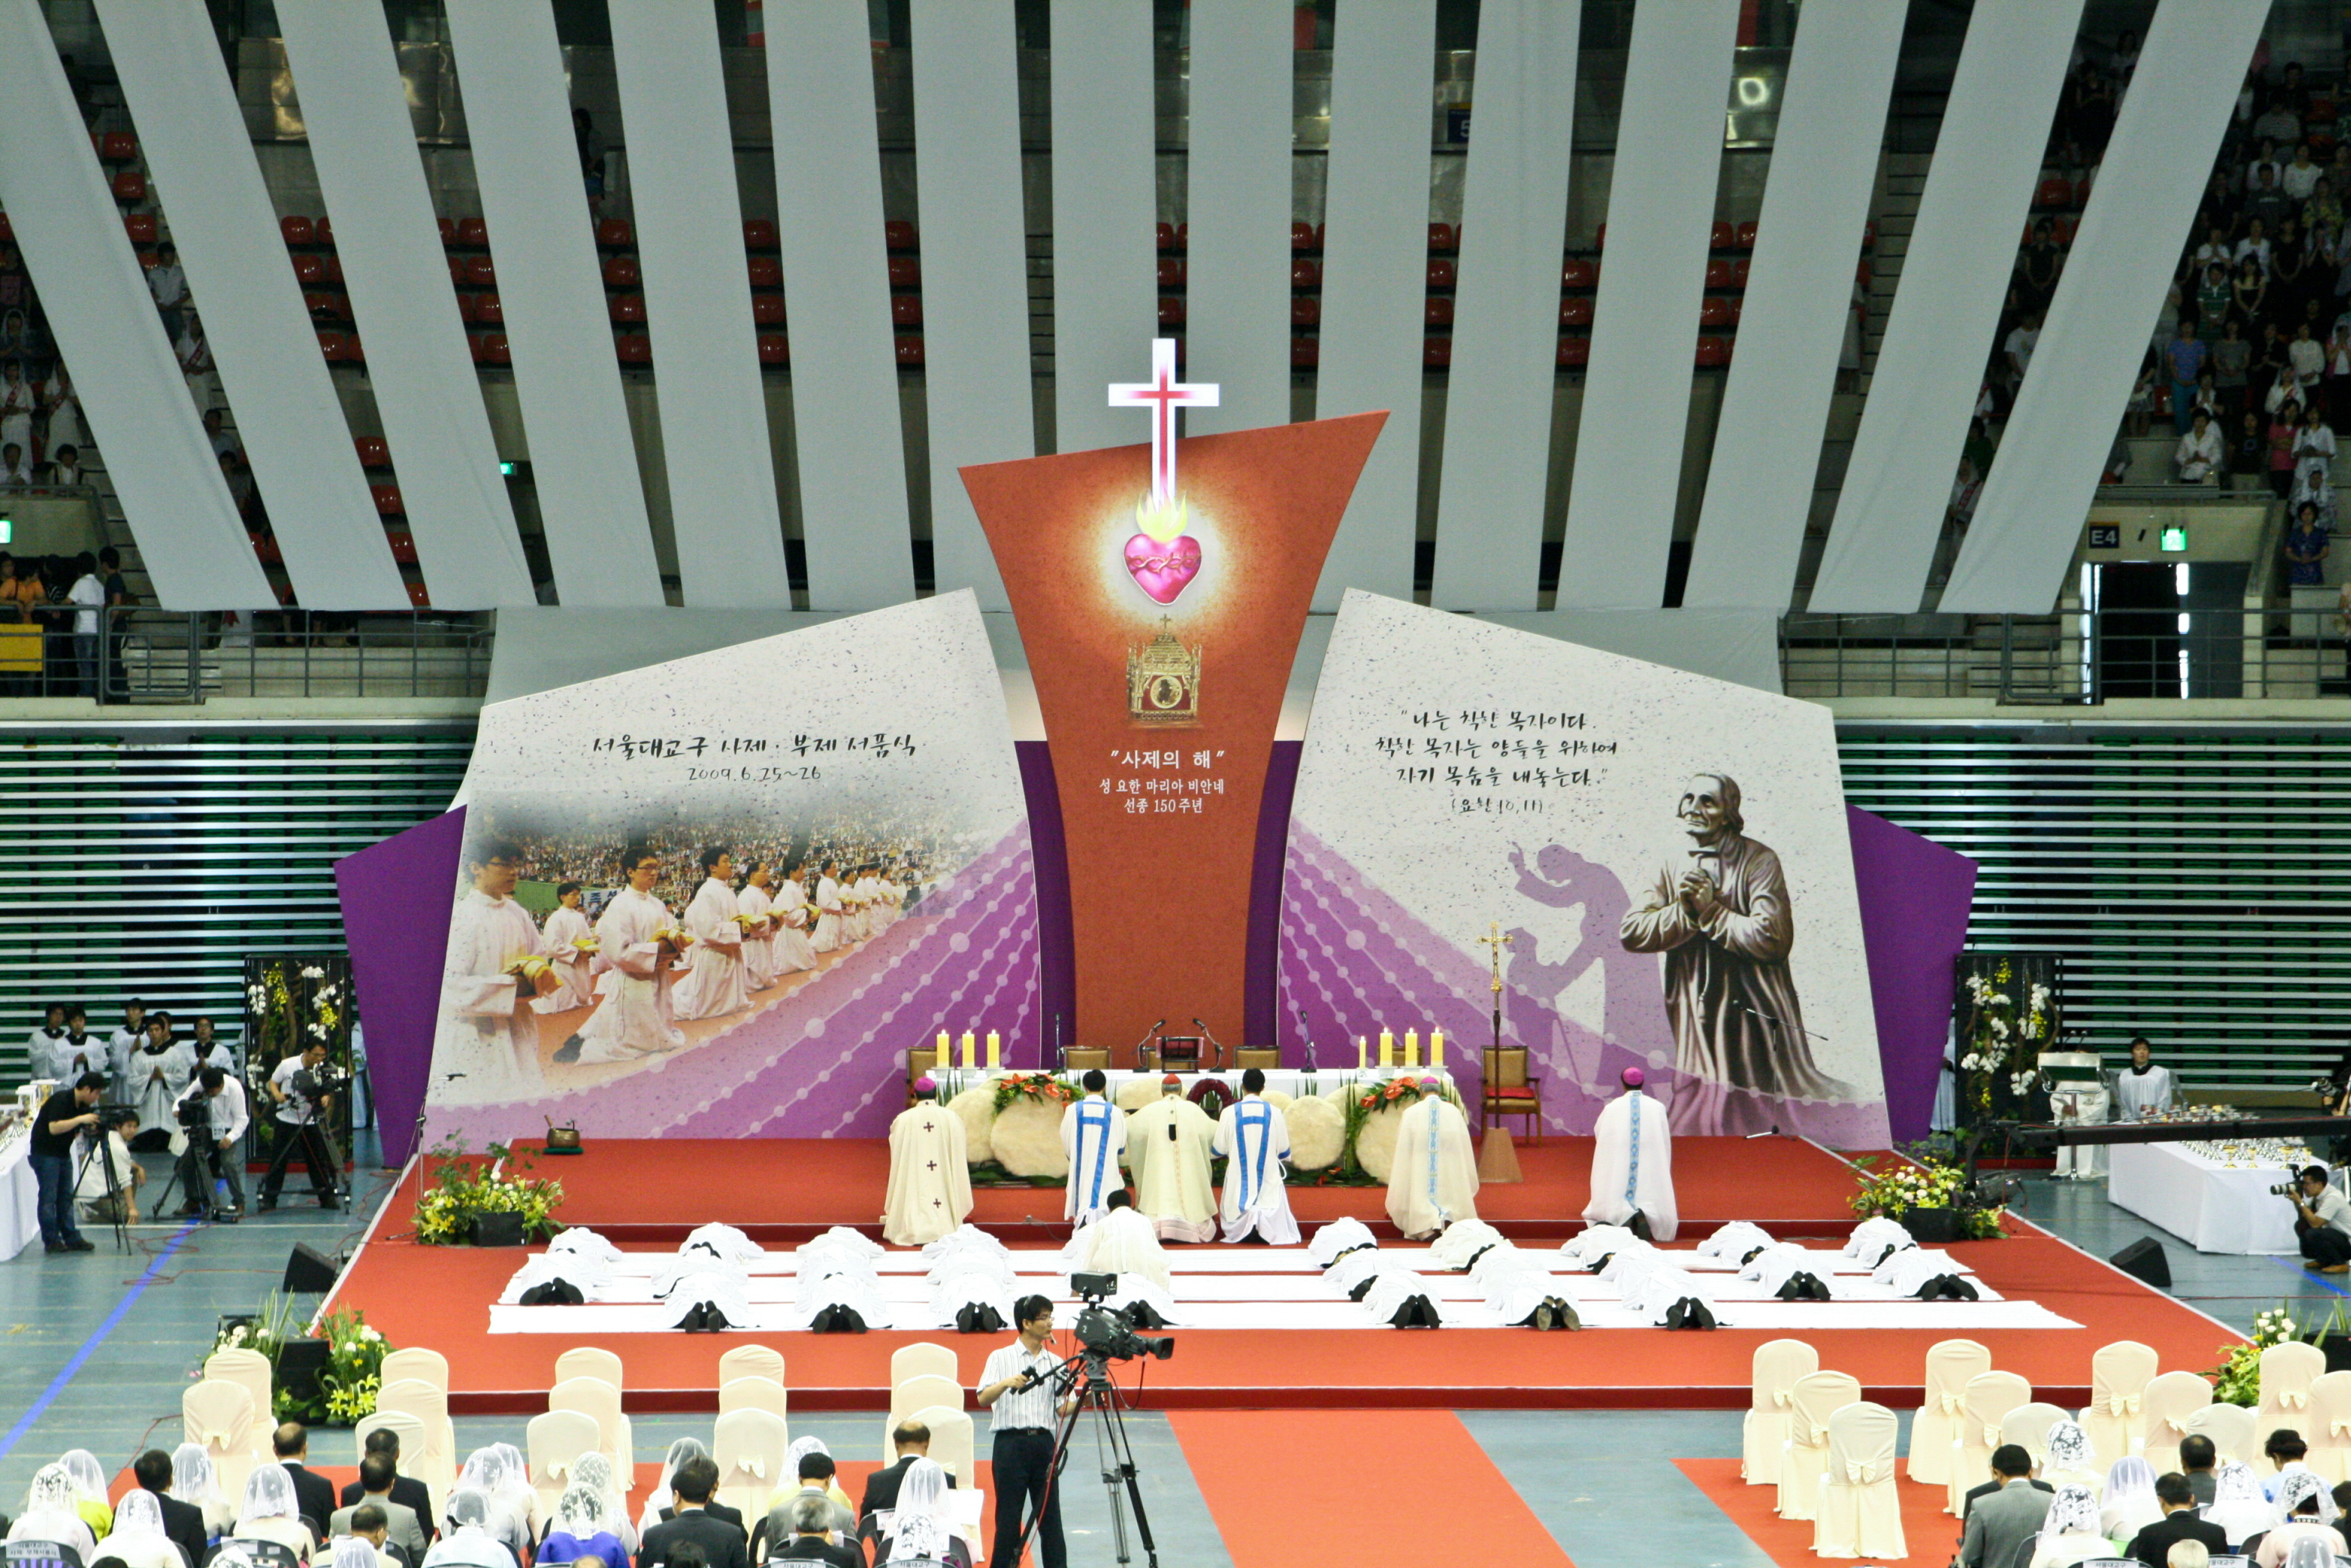 서울대교구 사제서품식(2009.6.26)의 관련된 이미지 입니다.